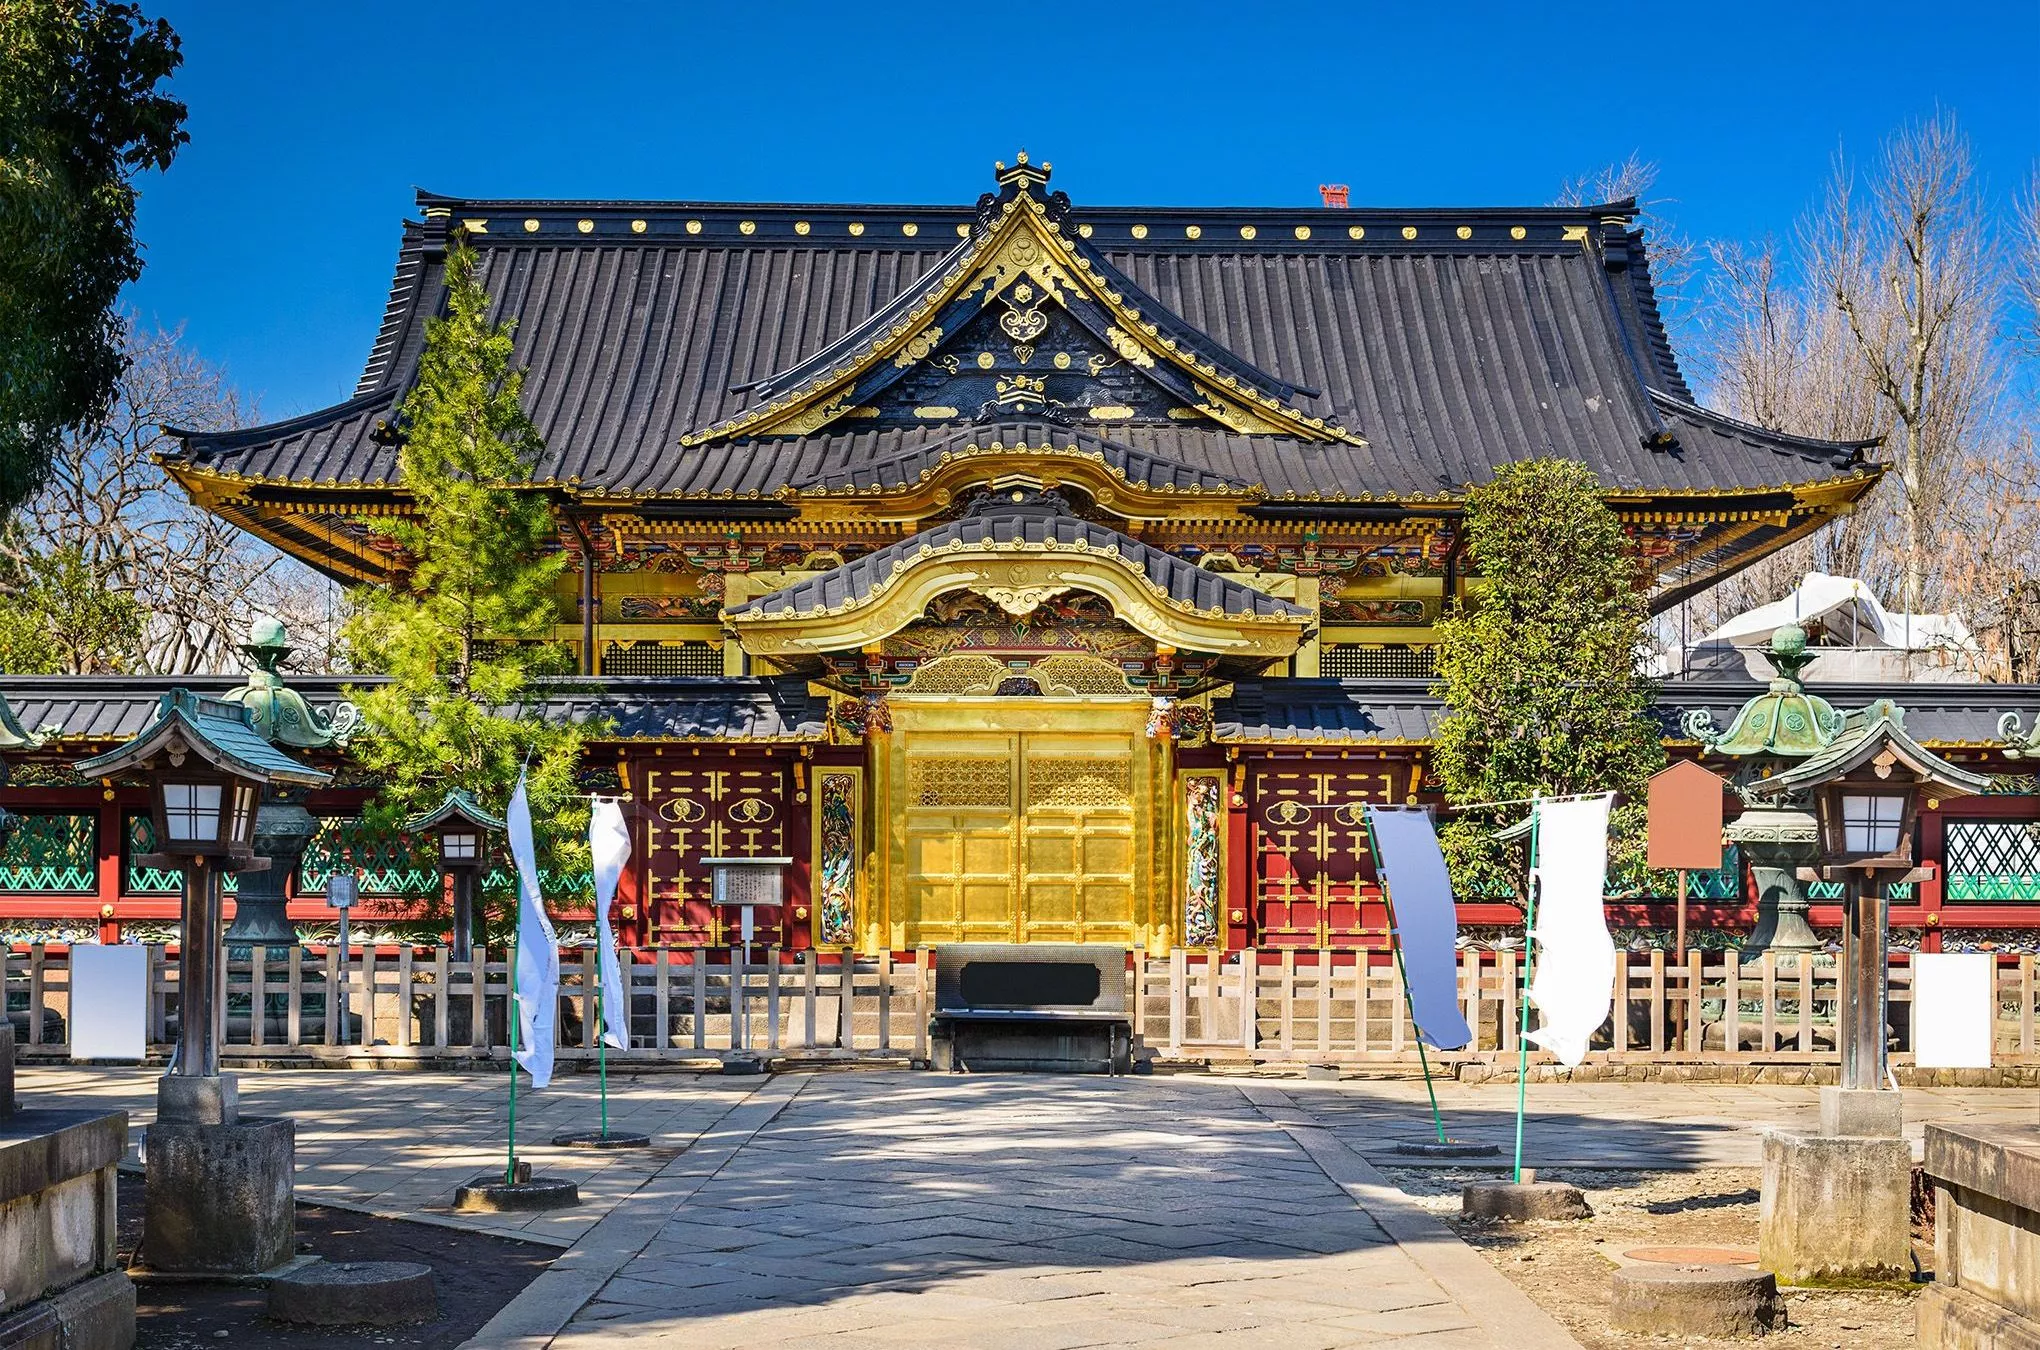 Erdbeben und Kriege konnten dem Toshogu-Schrein und seiner prächtigen goldenen Fassade mitten im Ueno-Park nichts anhaben